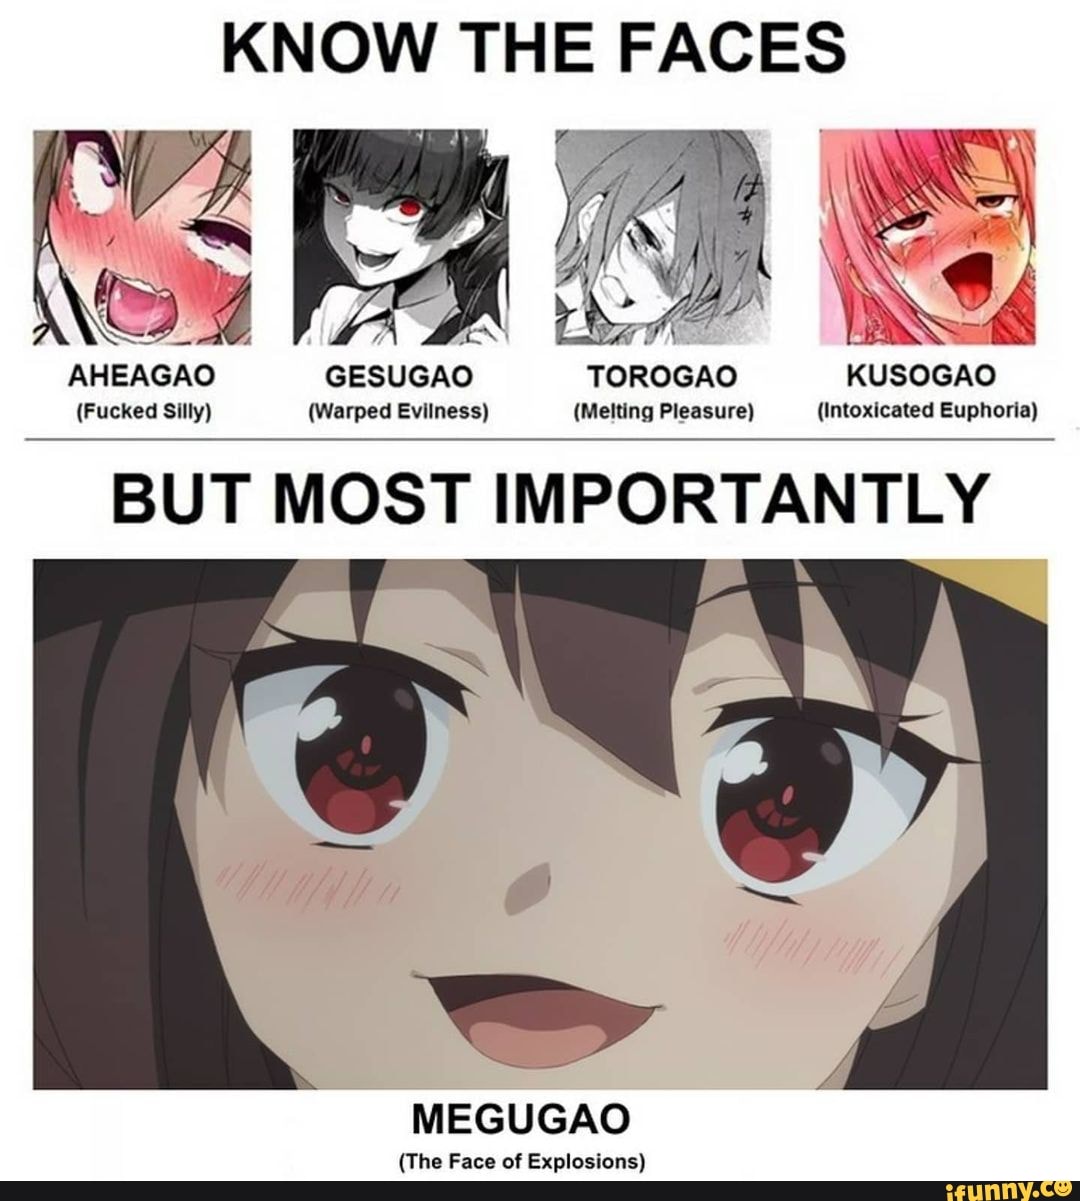 Kusogao faces